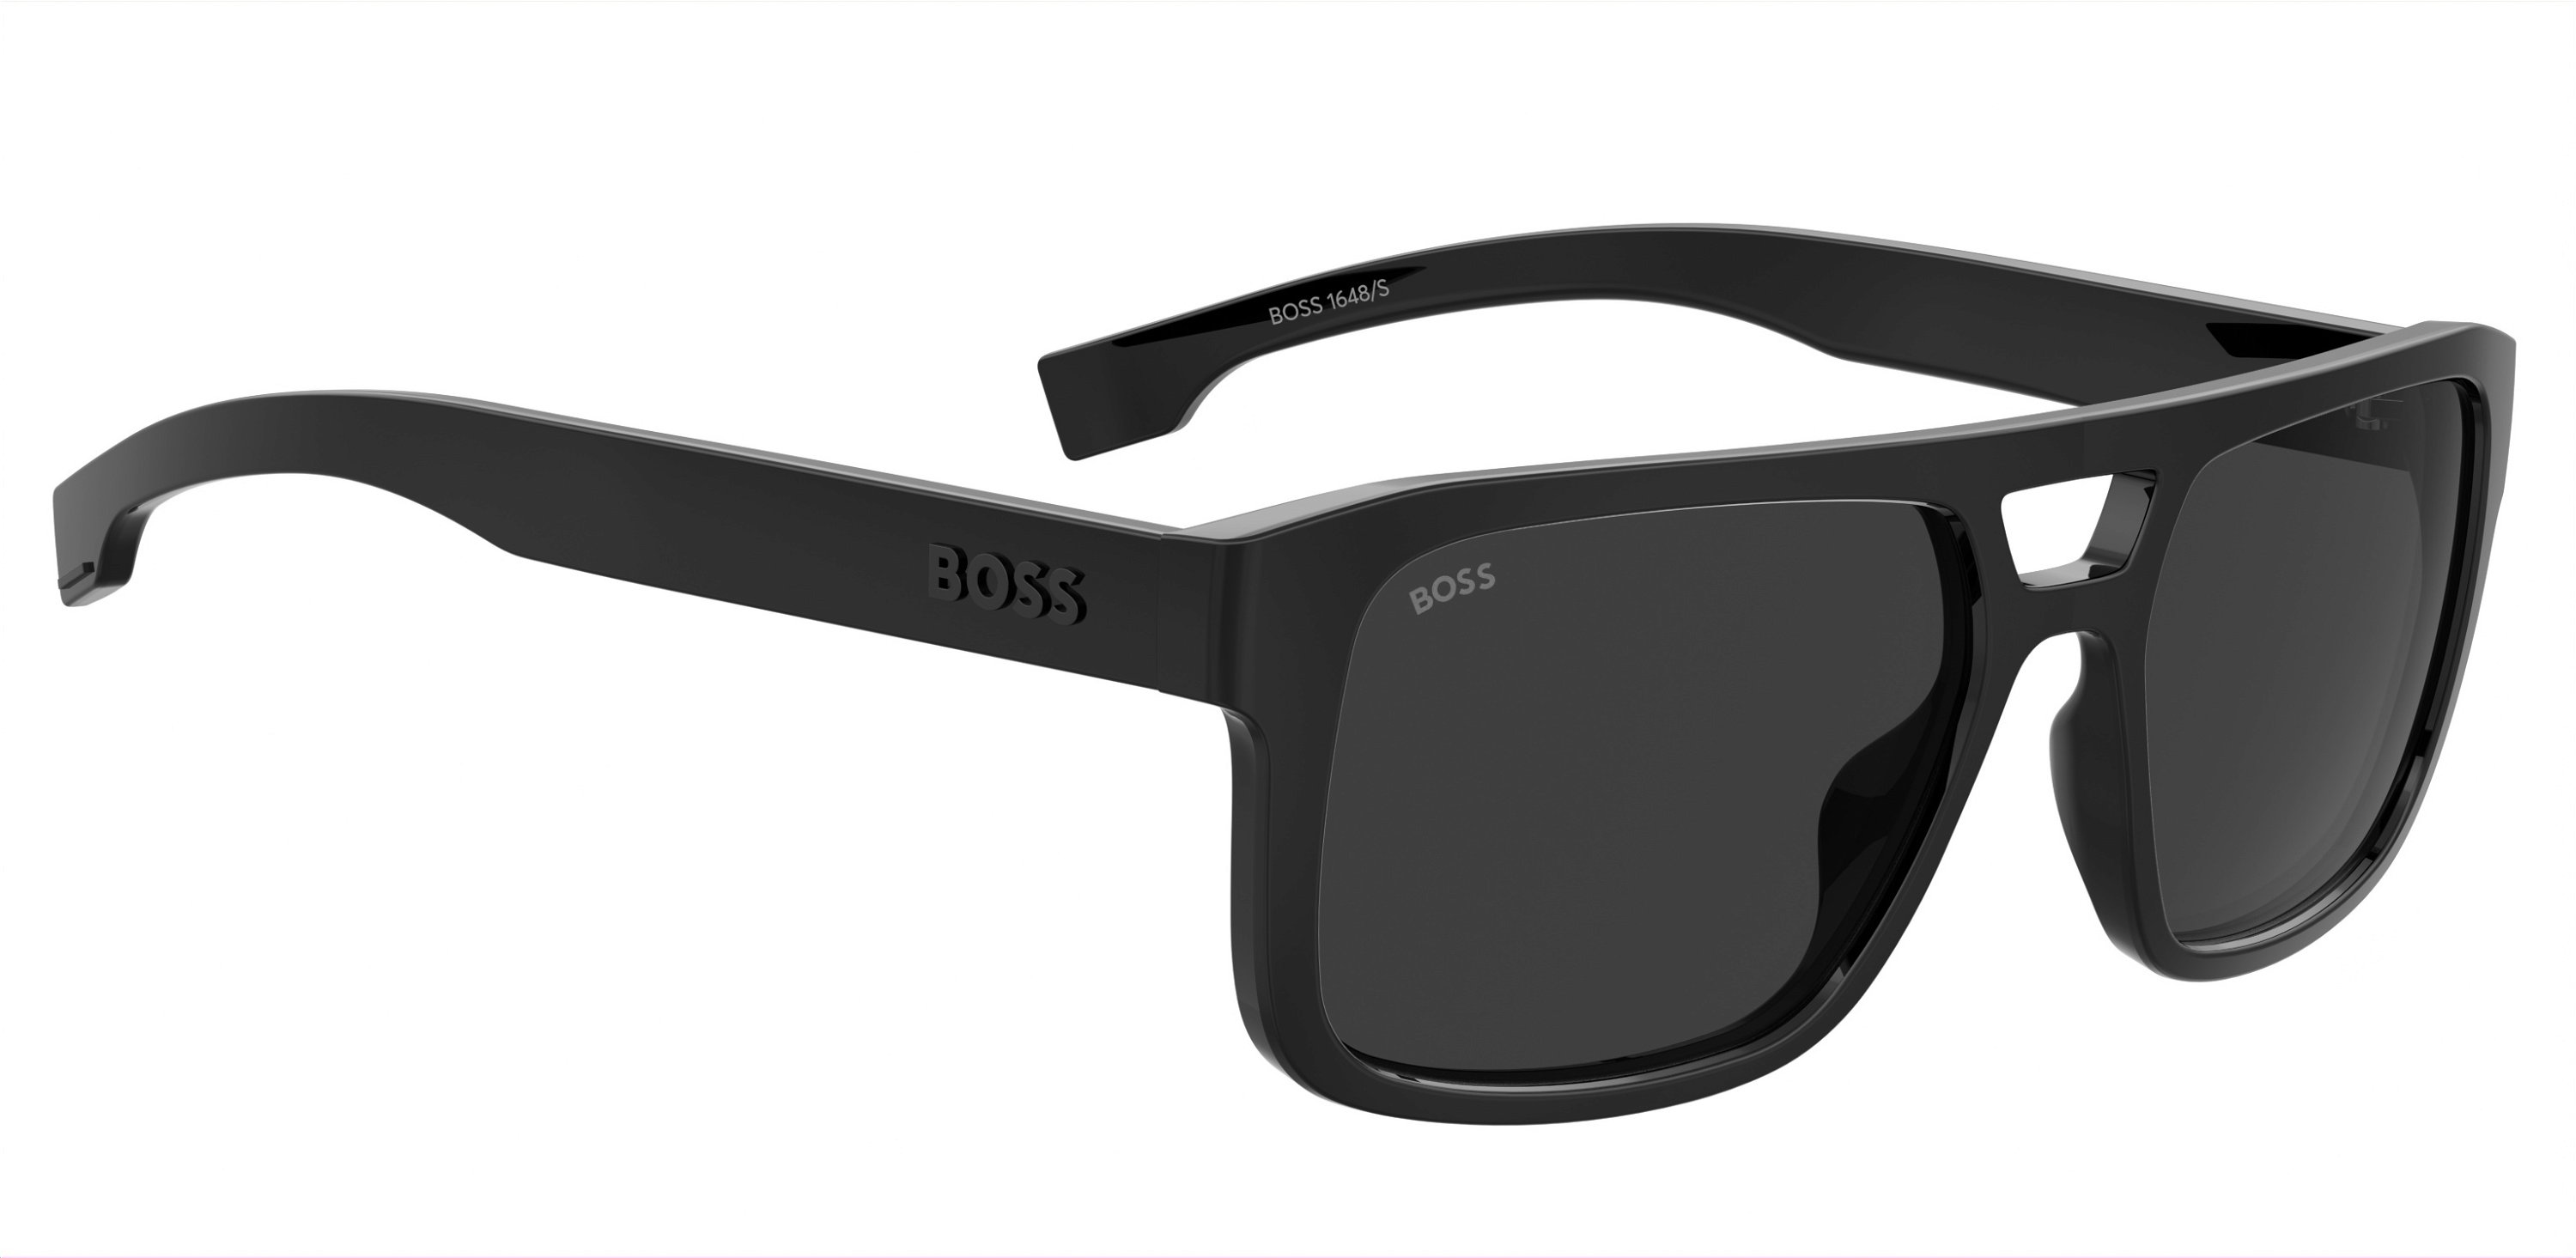 Das Bild zeigt die Sonnenbrille BOSS1648S 807 von der Marke BOSS in Schwarz.